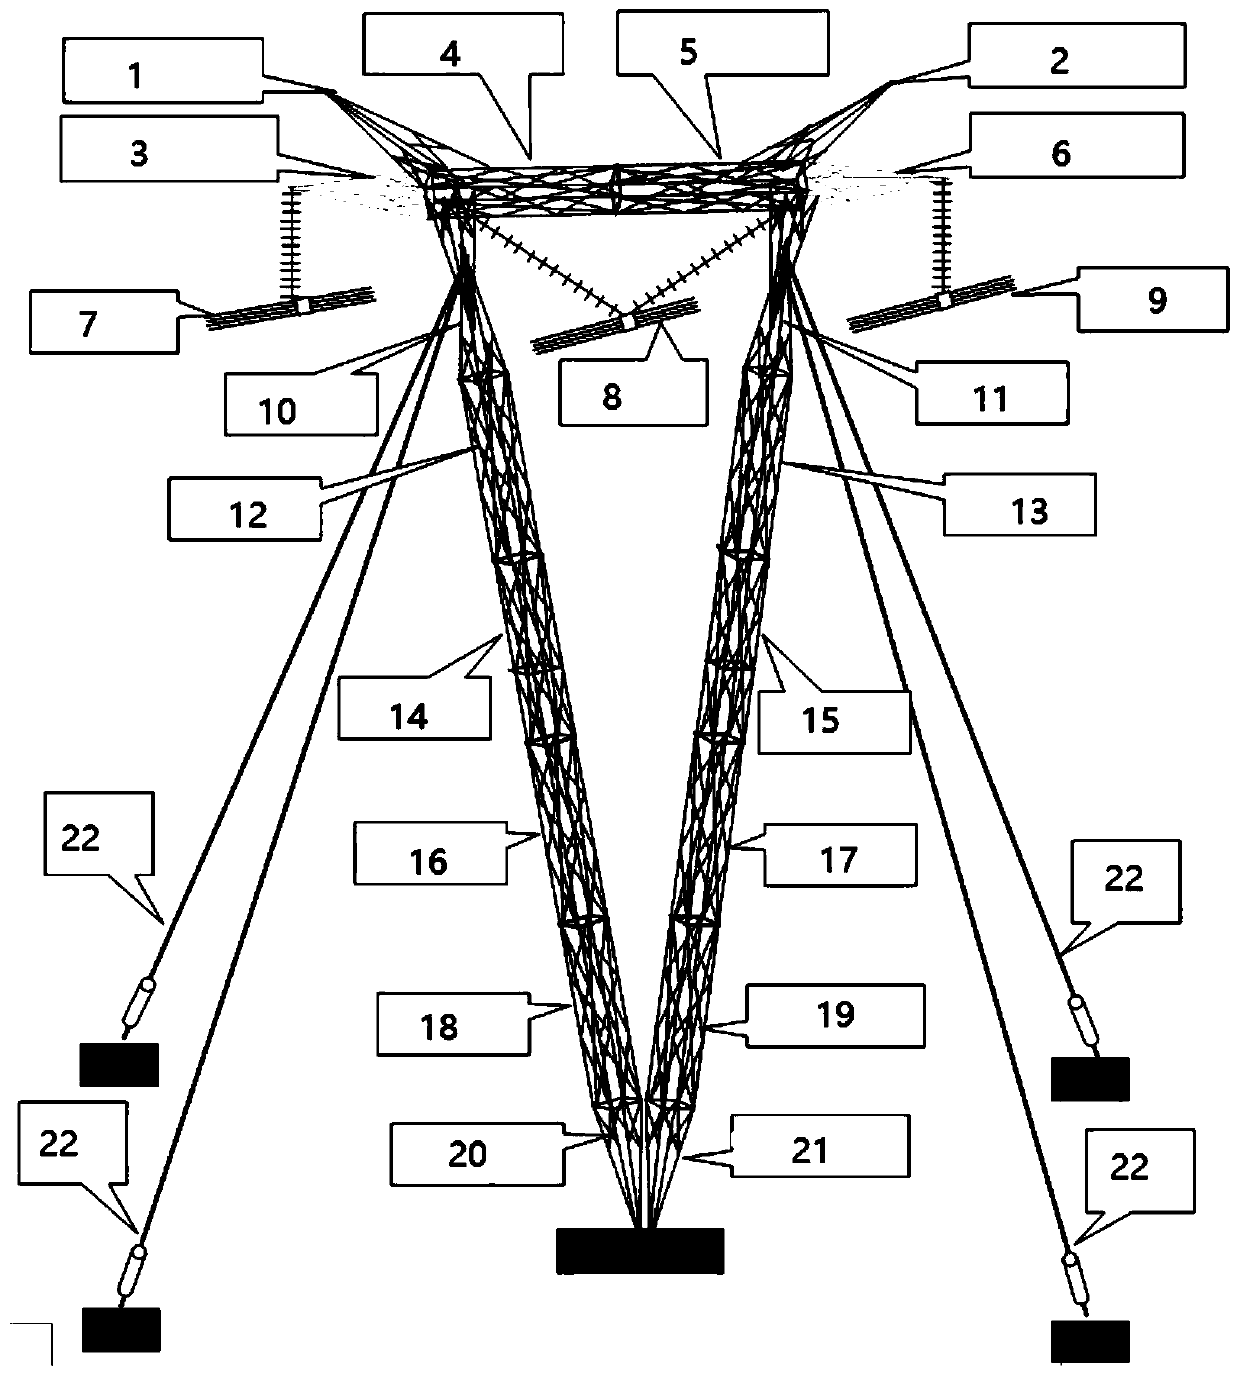 Method for dismantling V-shaped guyed tower